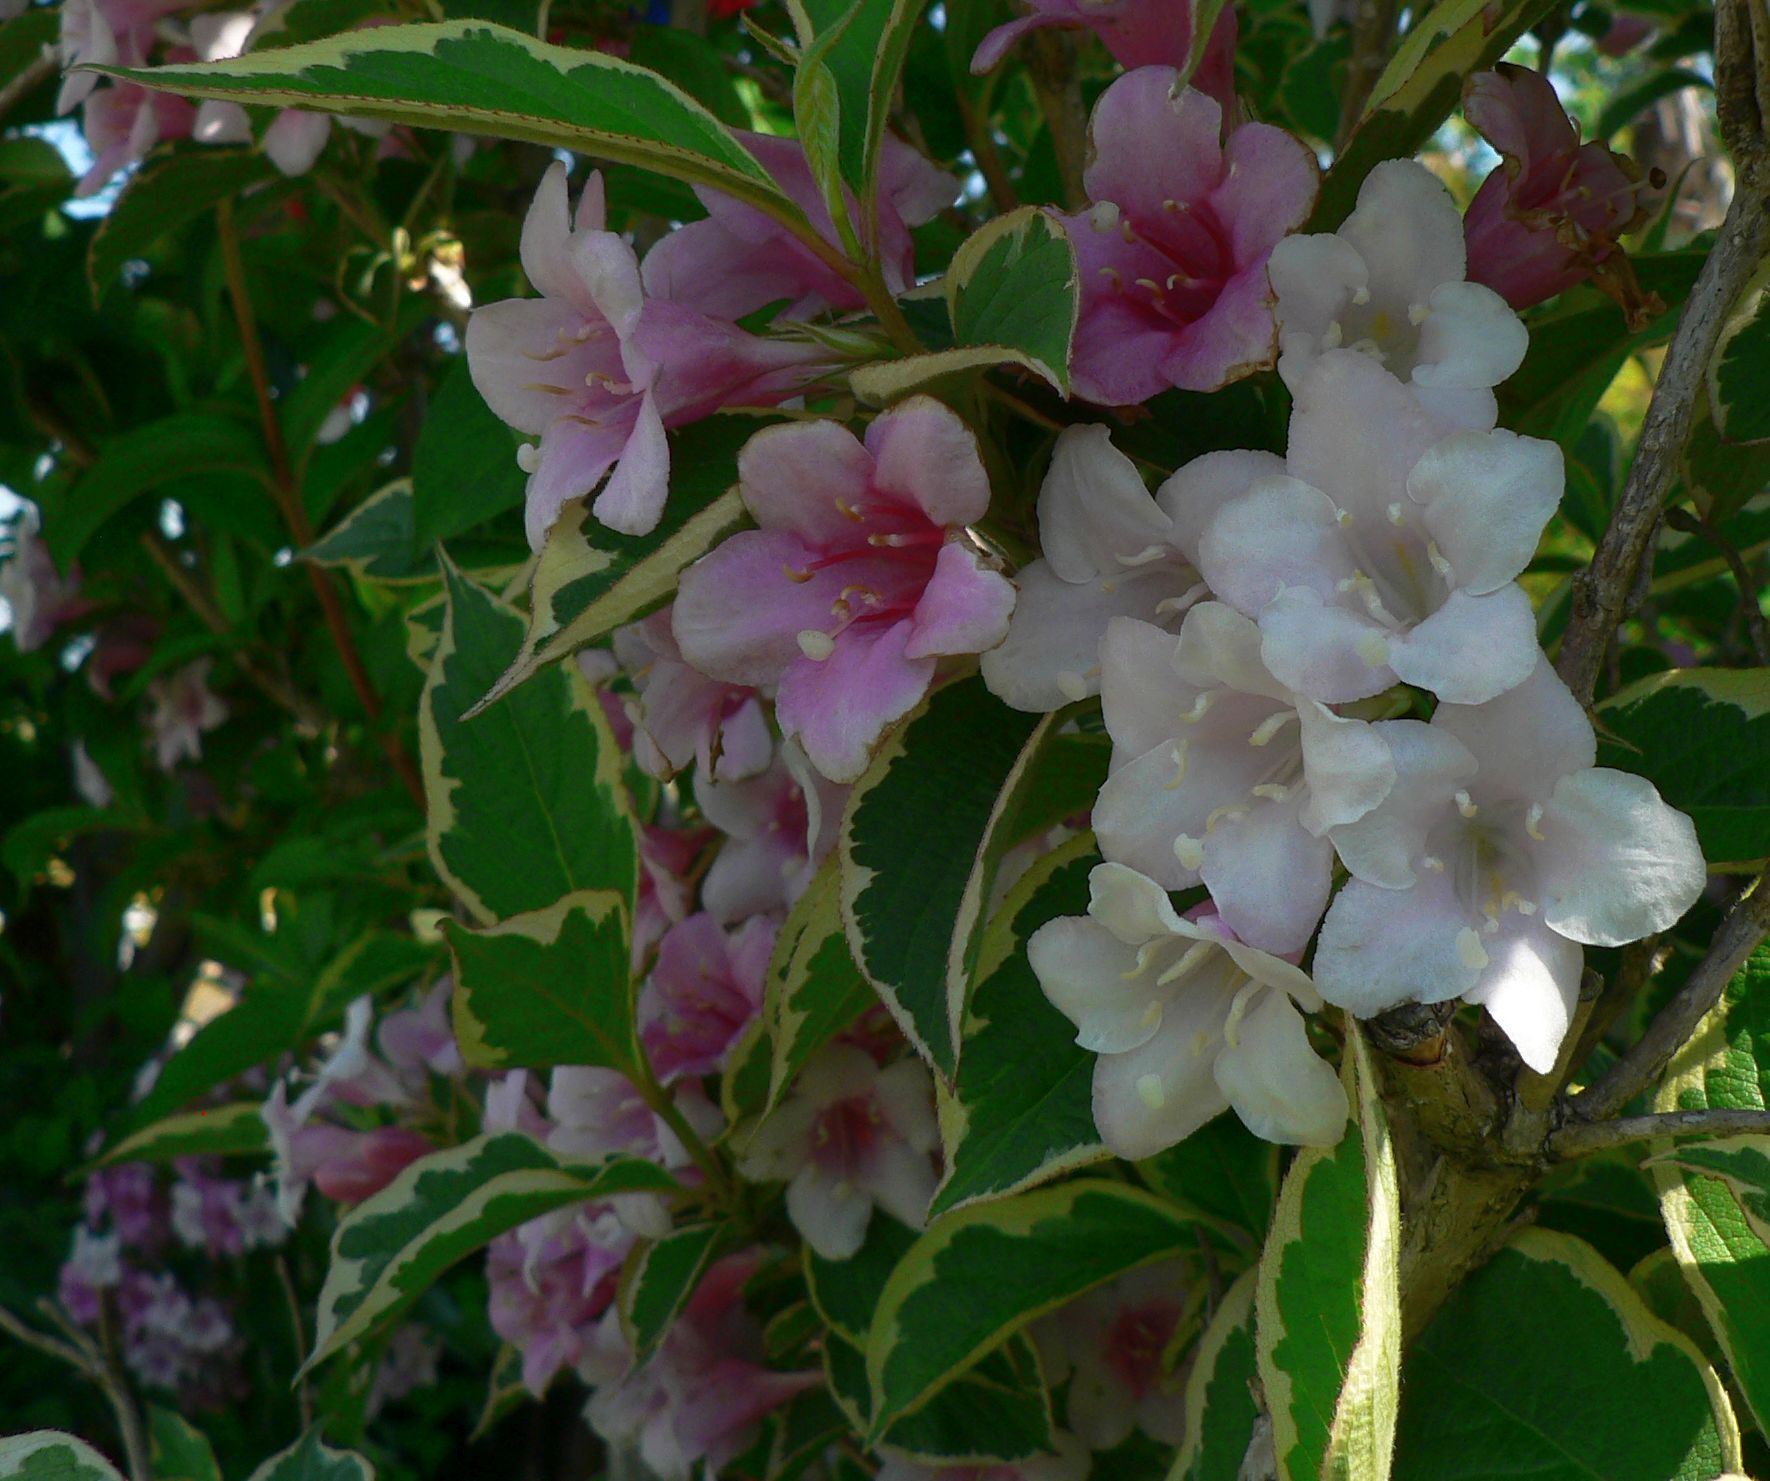 こころんグリーン 近所のお宅の庭に ウツギの花がたくさん咲いていました 白とピンクの花が 混ざって開いています 5枚の 花びらのしっかりした花が 密集しています ウツギ 近所のお宅 庭 白 ピンク 花びら 春 春の花 園芸品種 園芸